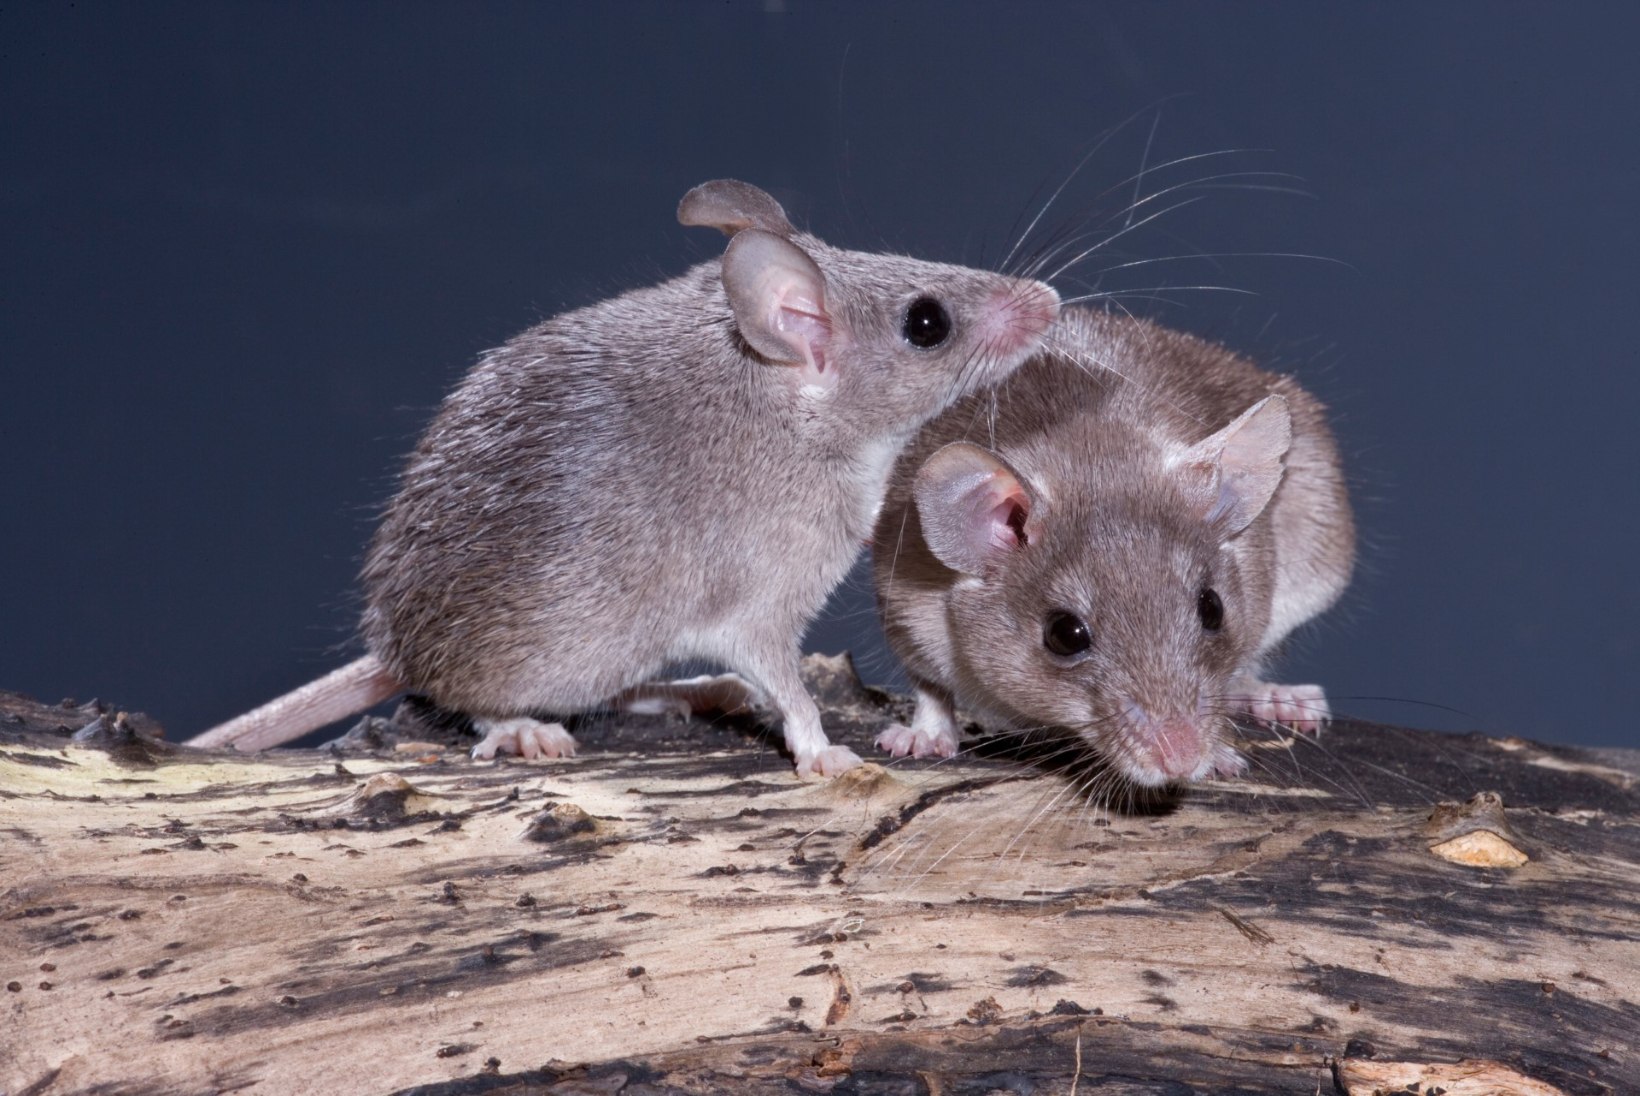 Avastati hiireliik, kelle emastel esineb kuupuhastus